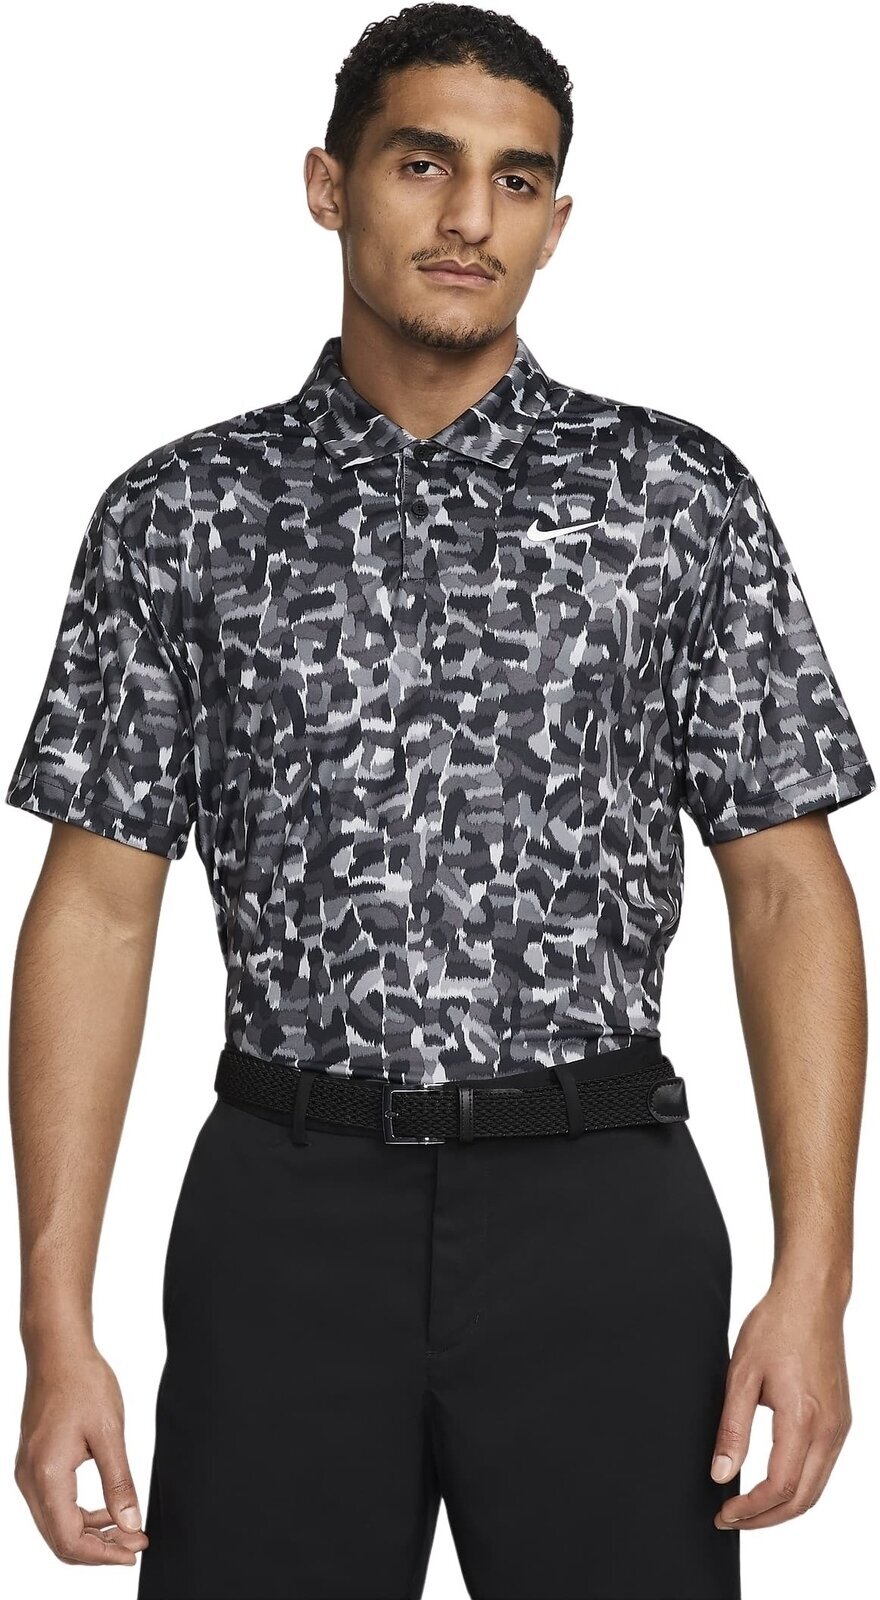 Polo-Shirt Nike Dri-Fit Tour Confetti Print Mens Polo Light Smoke Grey/White XL